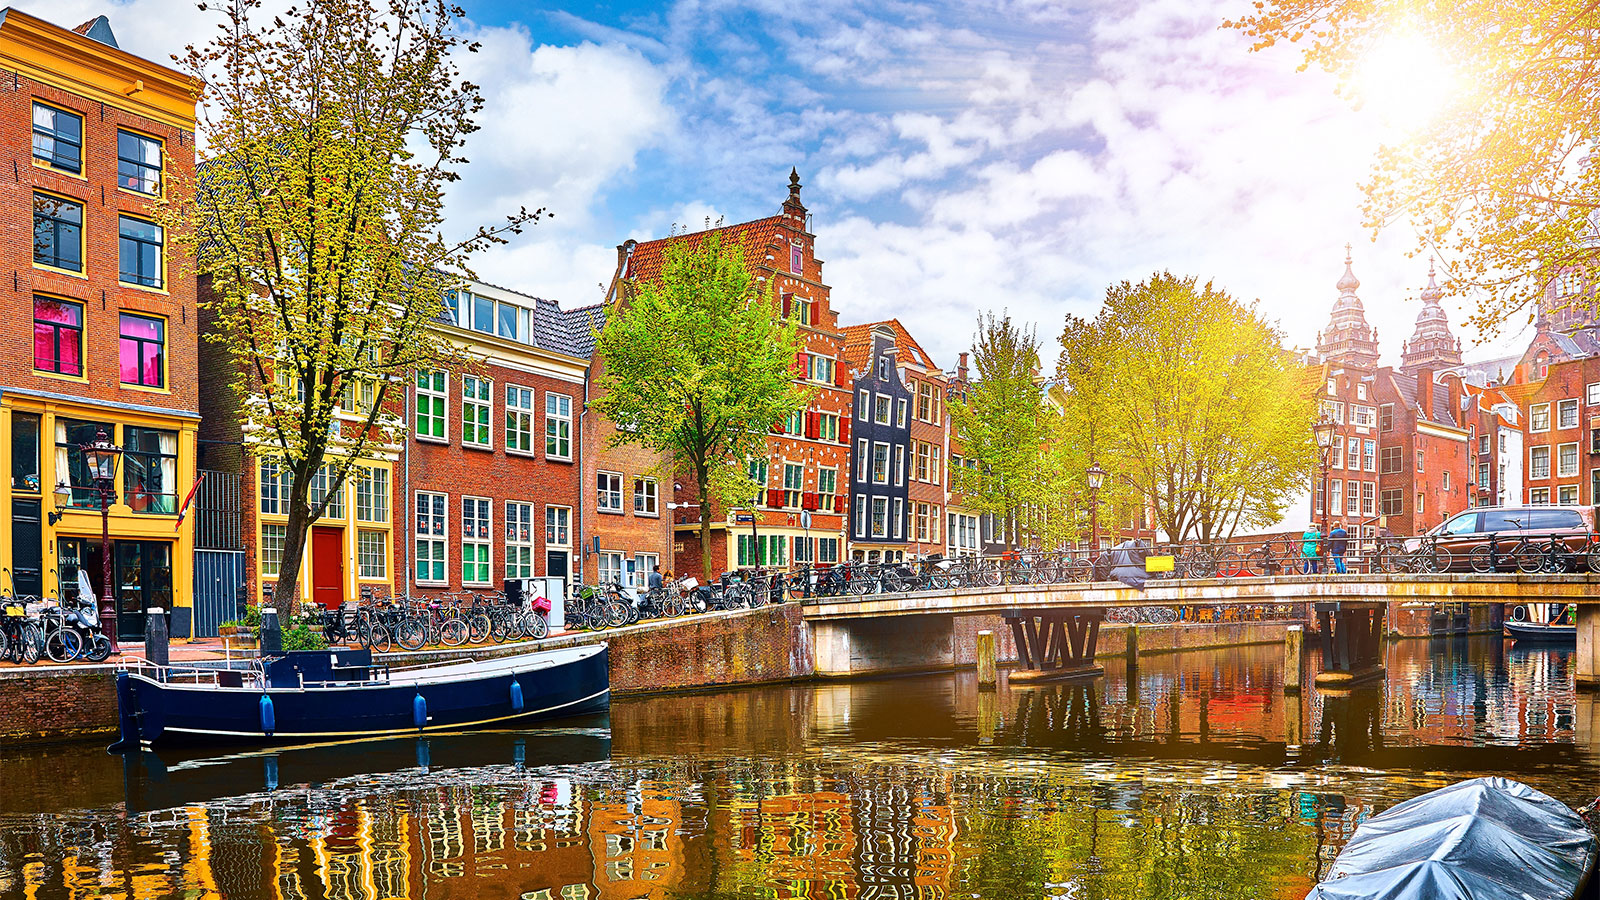 オランダ、アムステルダムの運河と川縁に並ぶカラフルな建物